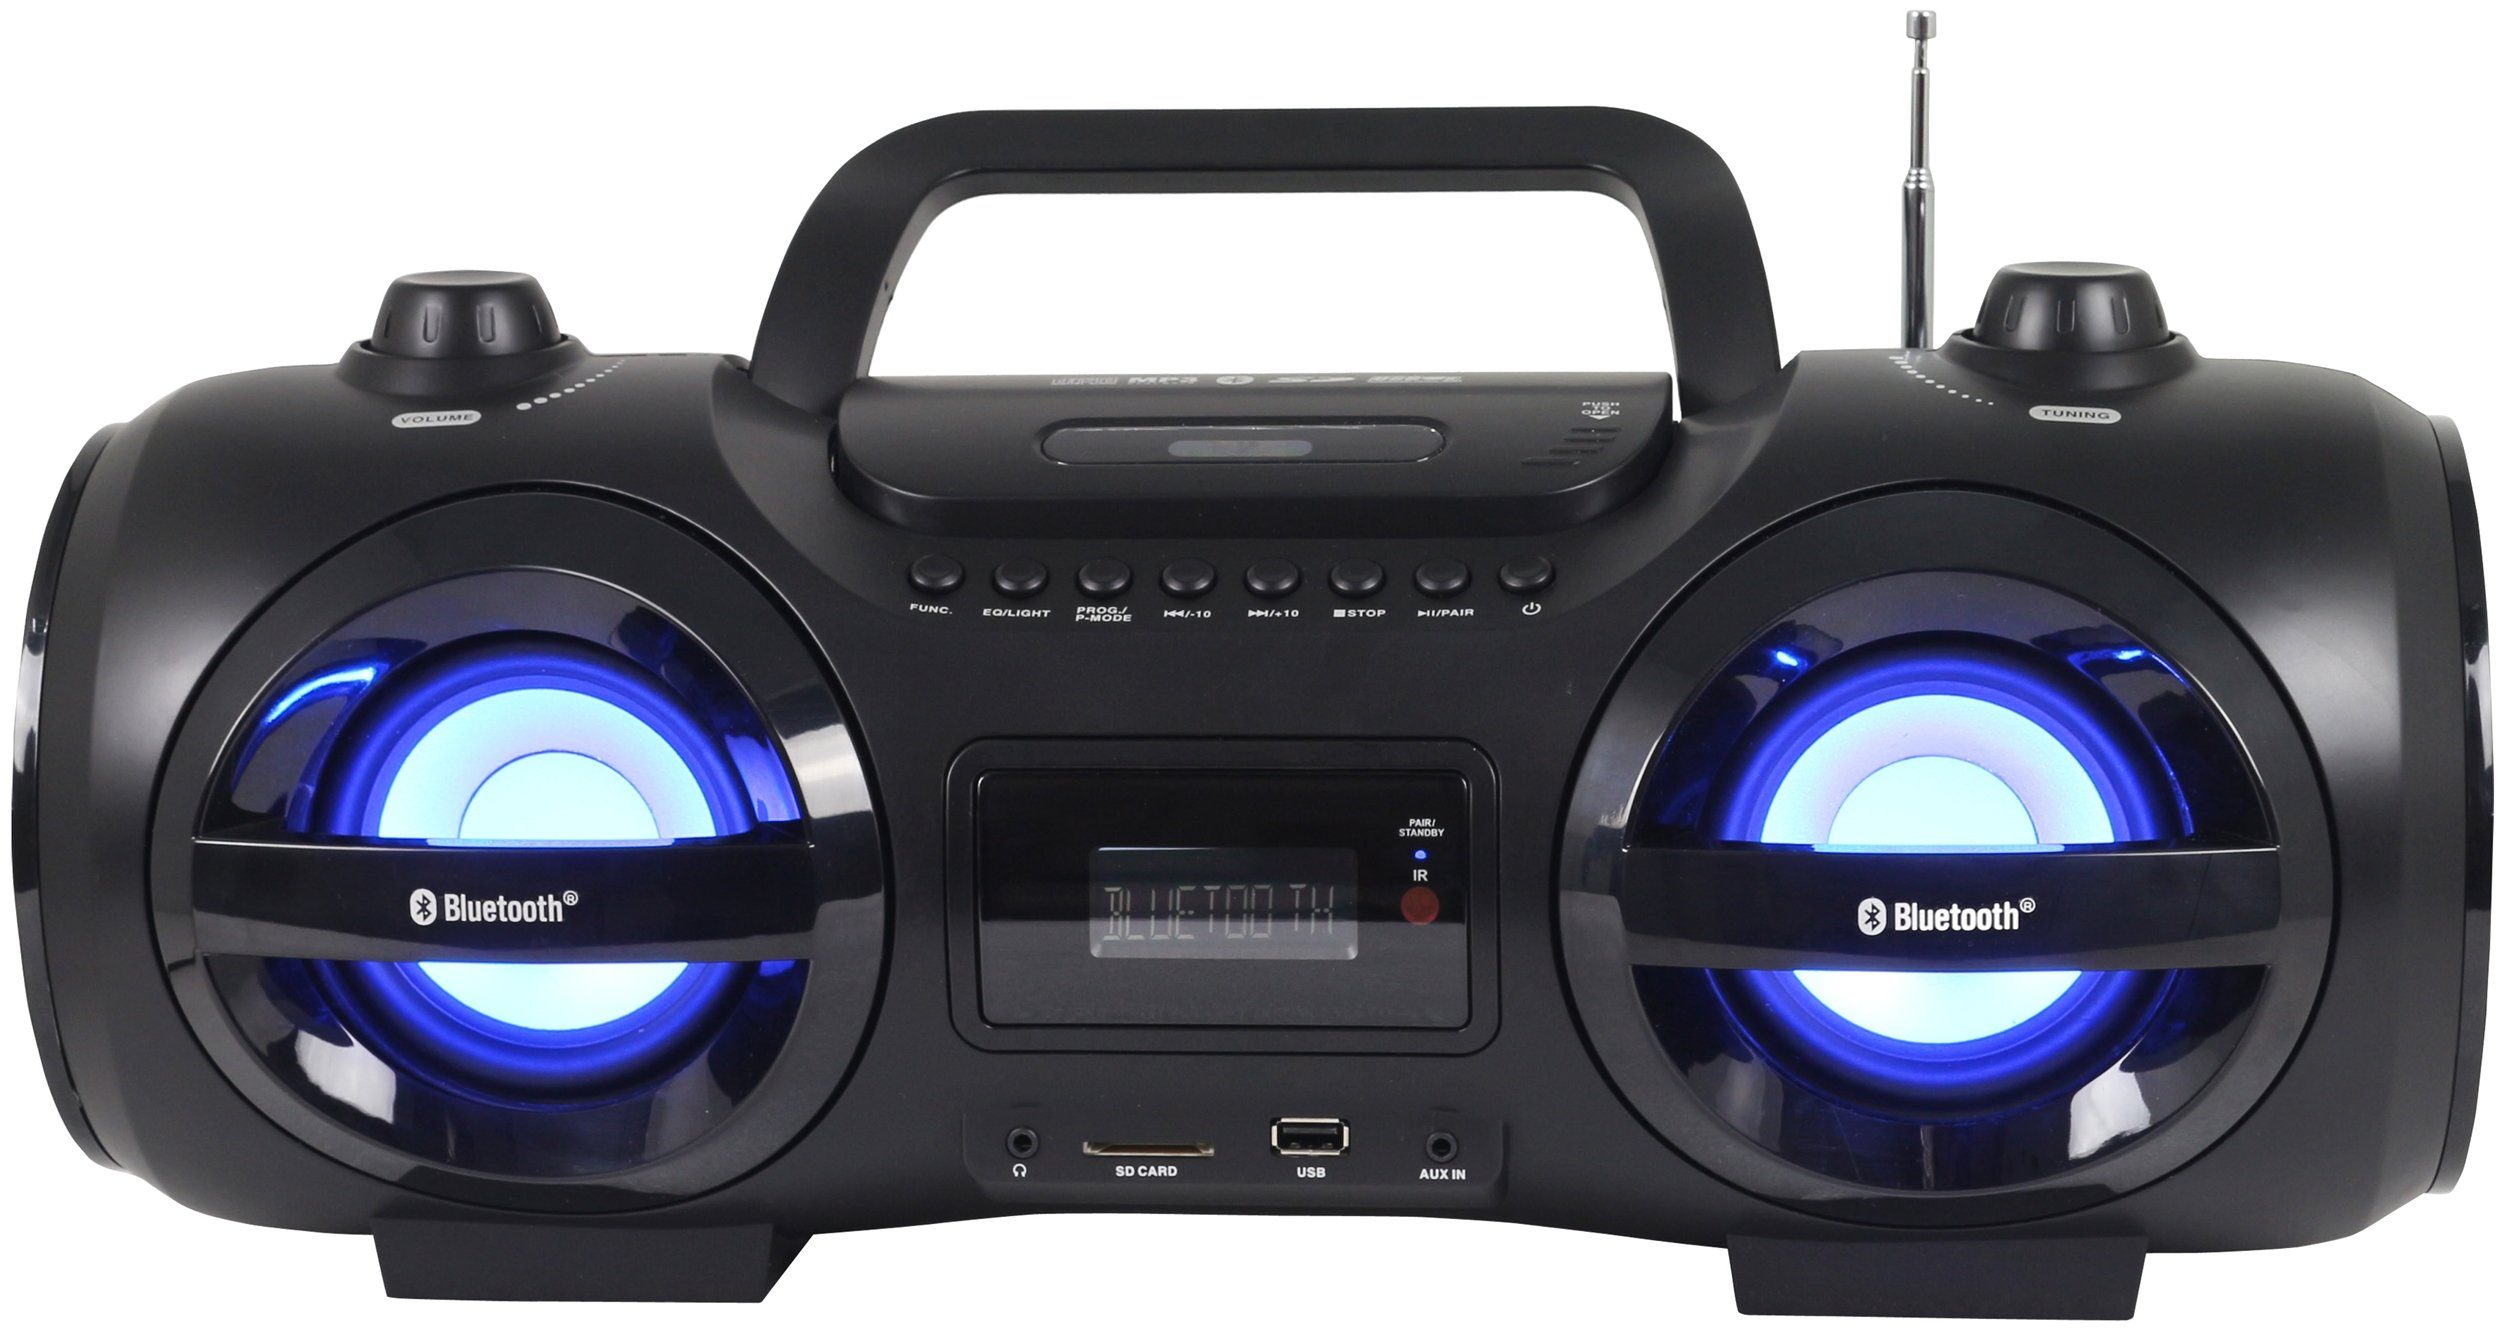 Reflexion CDR900BT Boombox (200 W, Ghettoblaster, Discolicht mit blinkender Modi-Auswahl, Bluetooth)